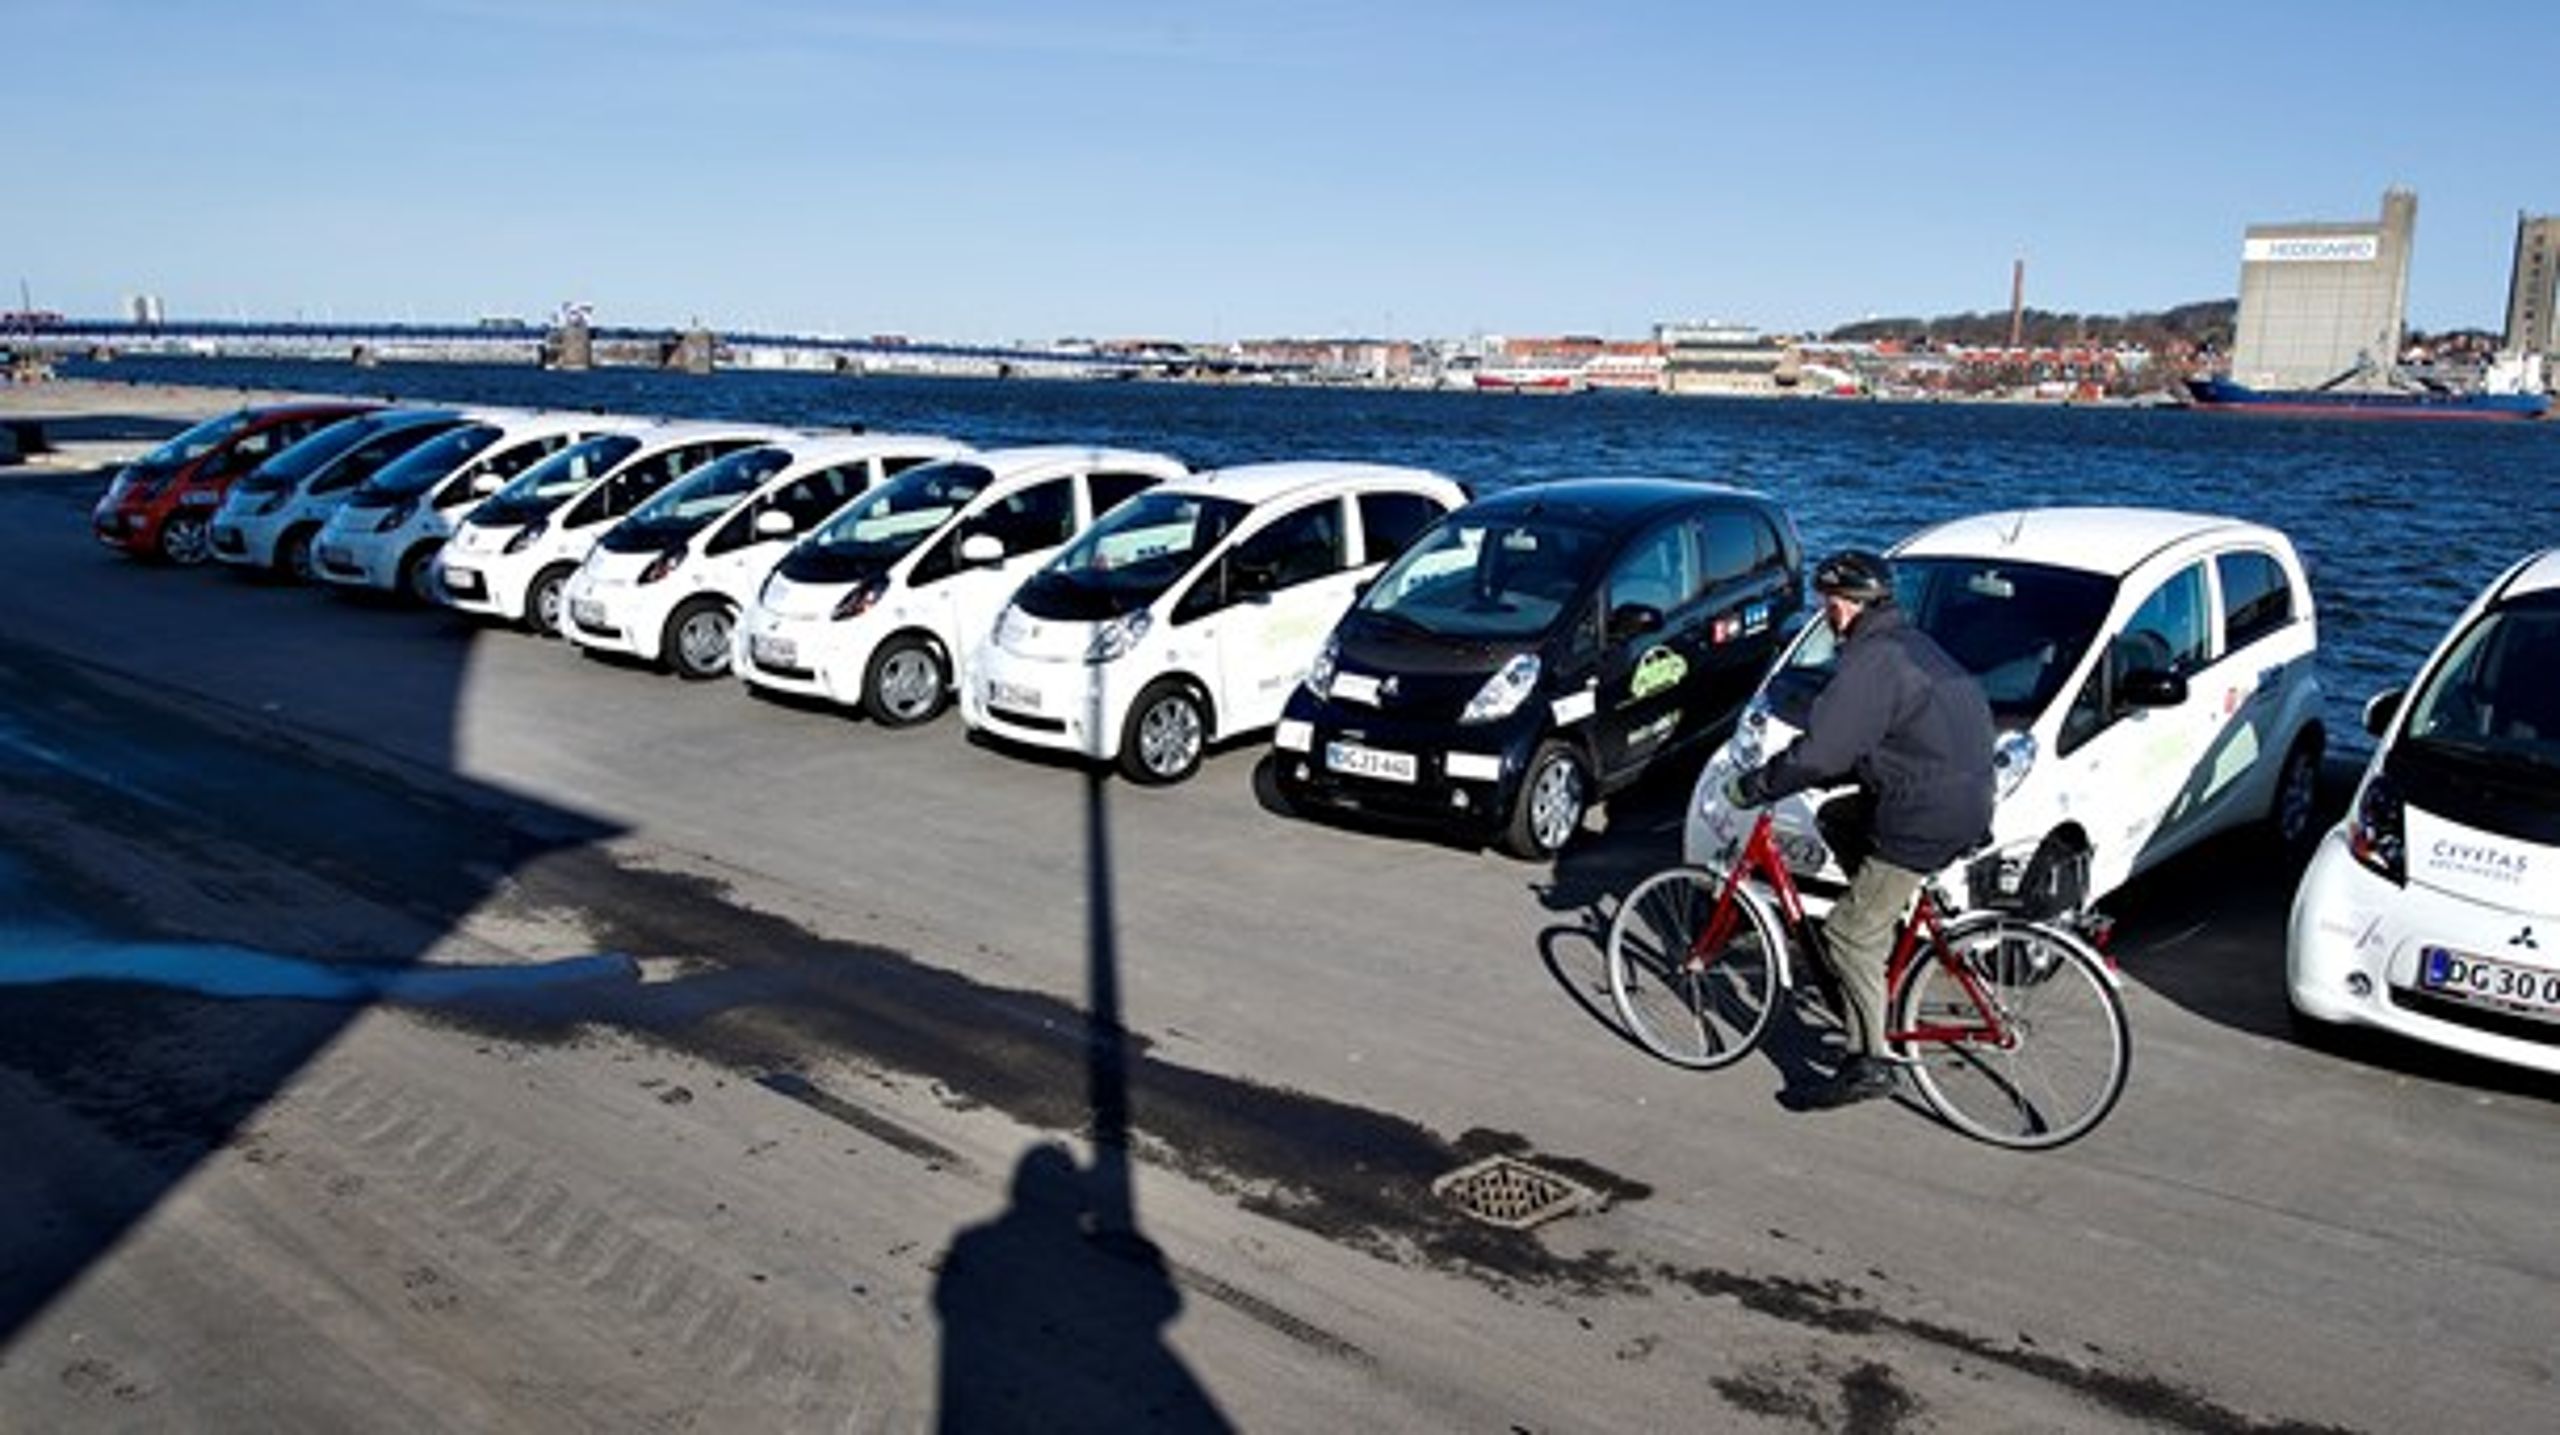 I Danmark beskatter vi&nbsp;primært&nbsp;bilers købsværdi, og dermed&nbsp;beskatter vi reelt elbiler hårdere end andre biler. Flytter vi derimod beskatningen til en&nbsp;løbende afgift, hvor omkostningerne til drift er markant lavere for elbiler, får vi&nbsp;en mere ligeværdig&nbsp;beskatning.